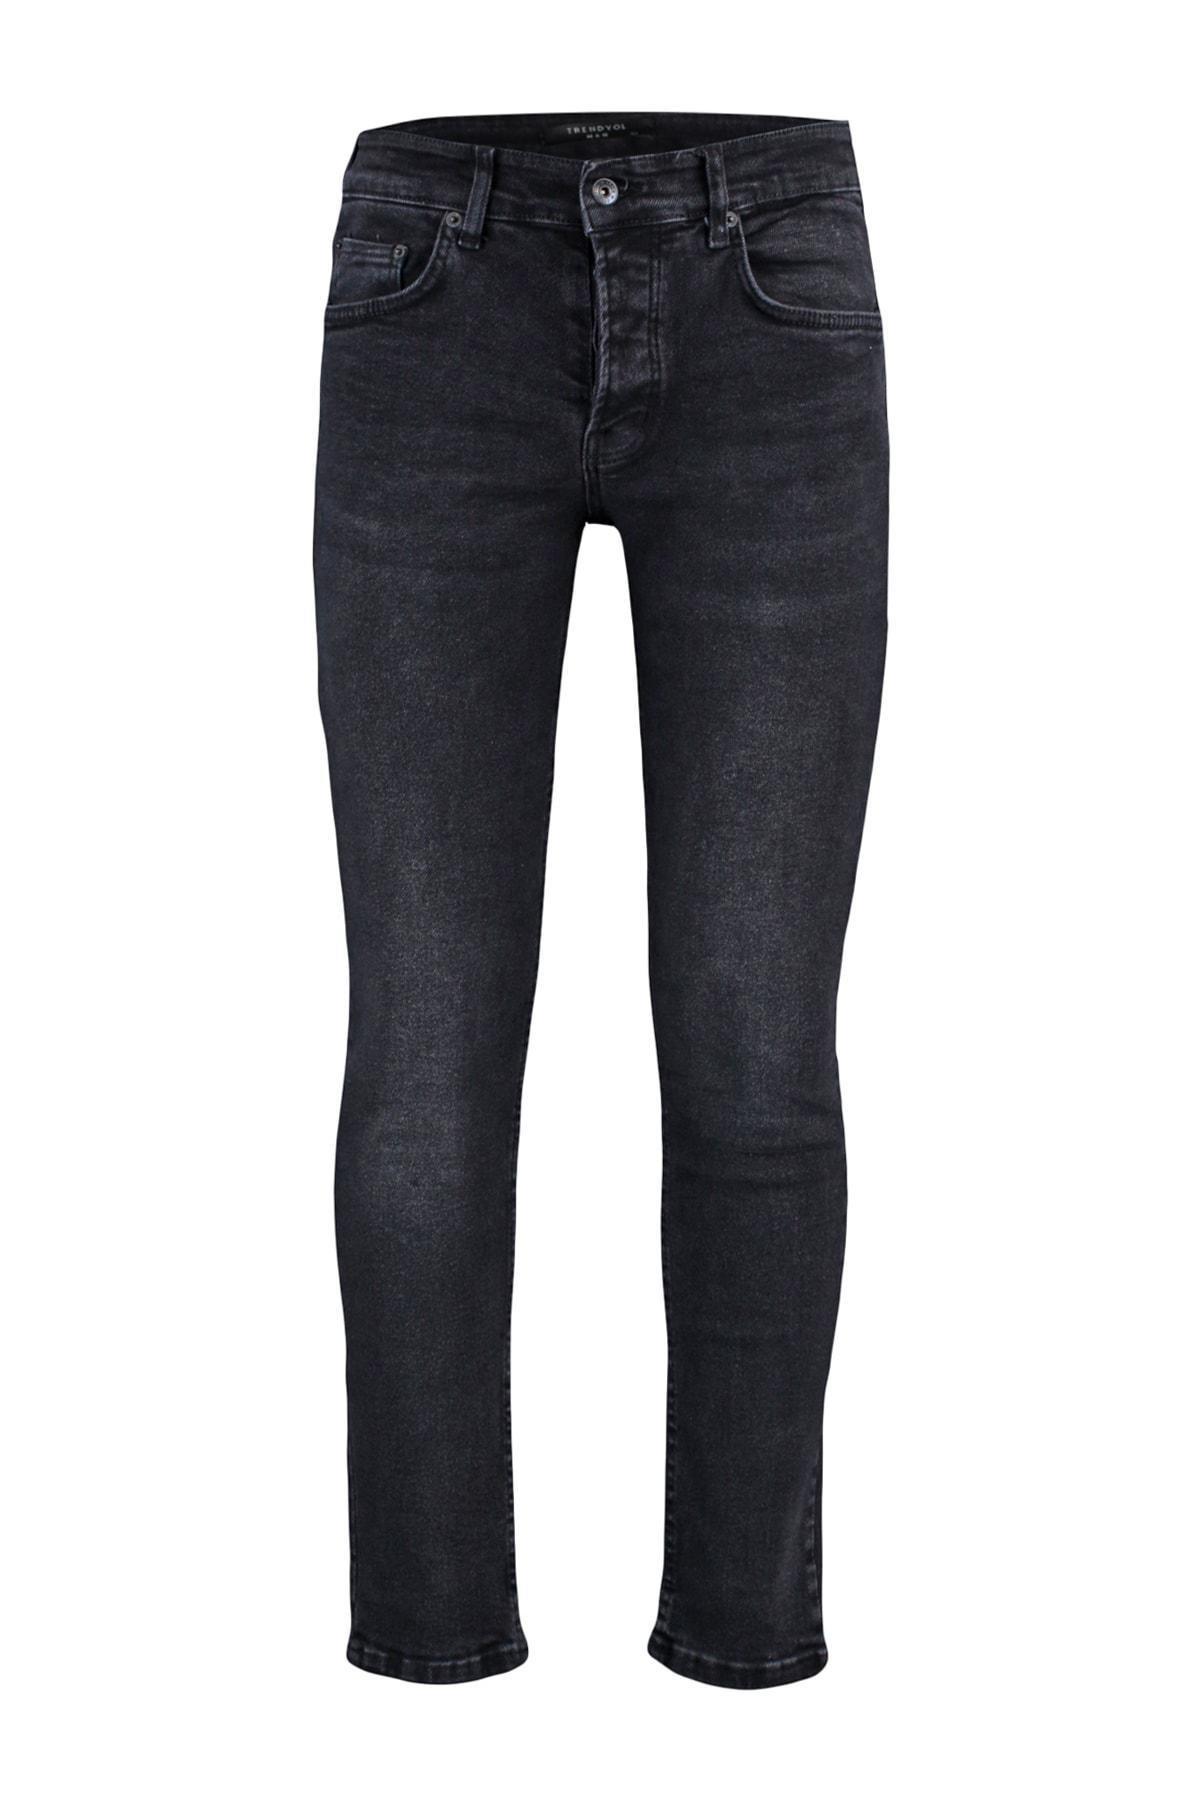 Trendyol - Black Skinny Denim Jeans